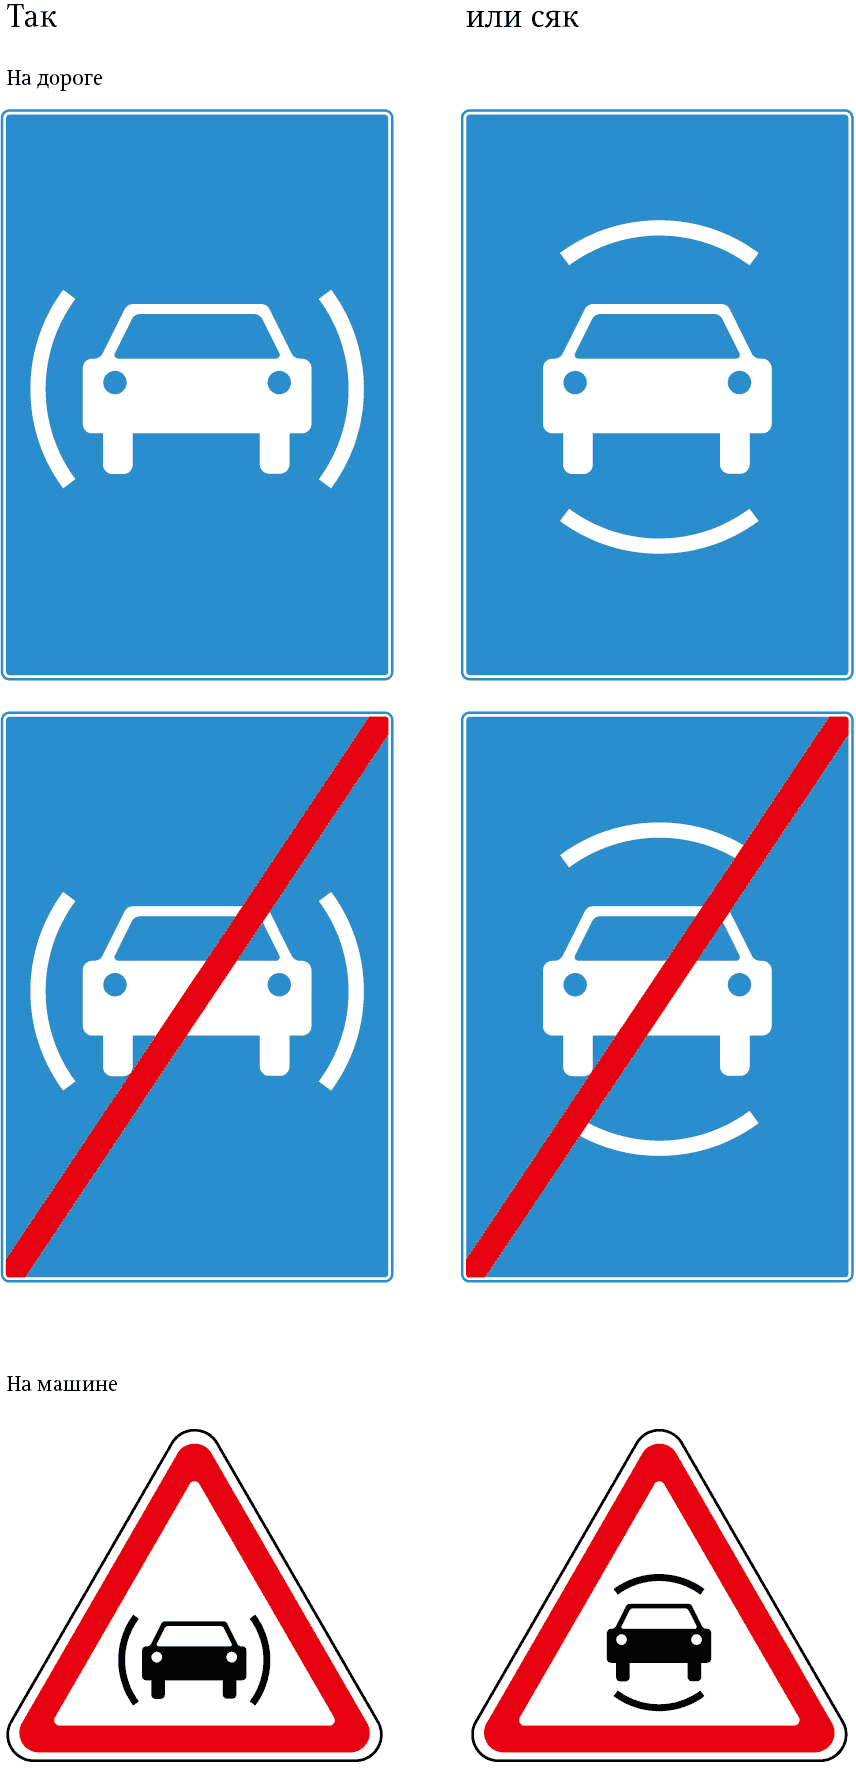 autonomous car sign process 02